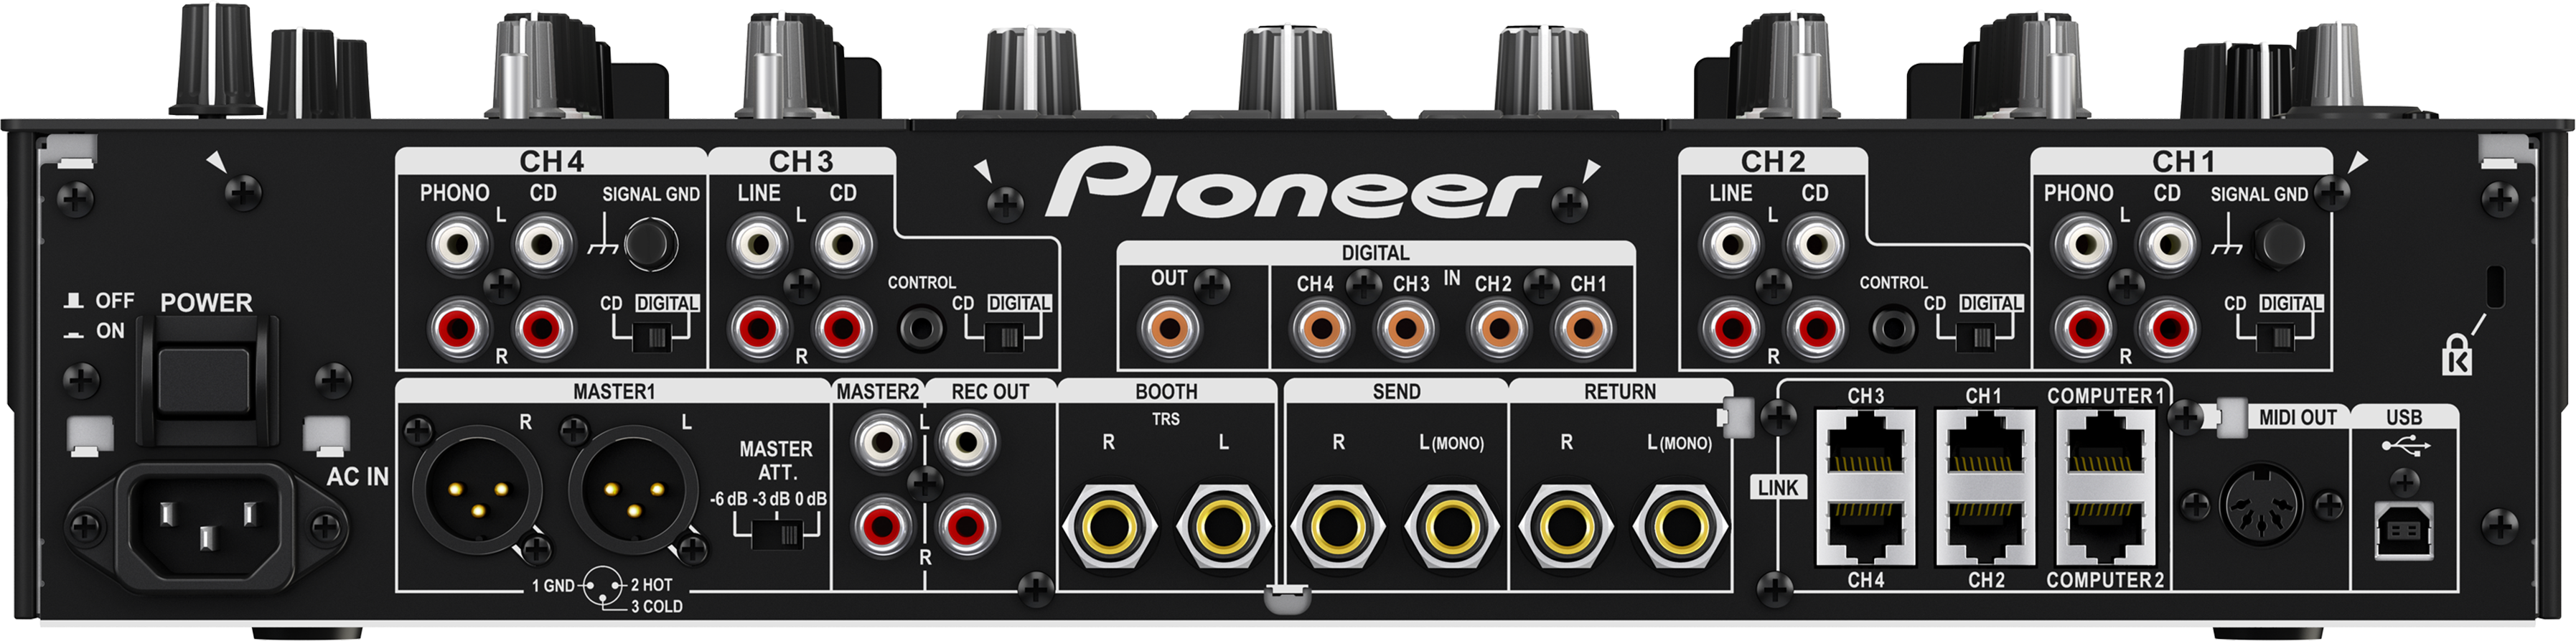 pioneer djm 2000 nexus mixer